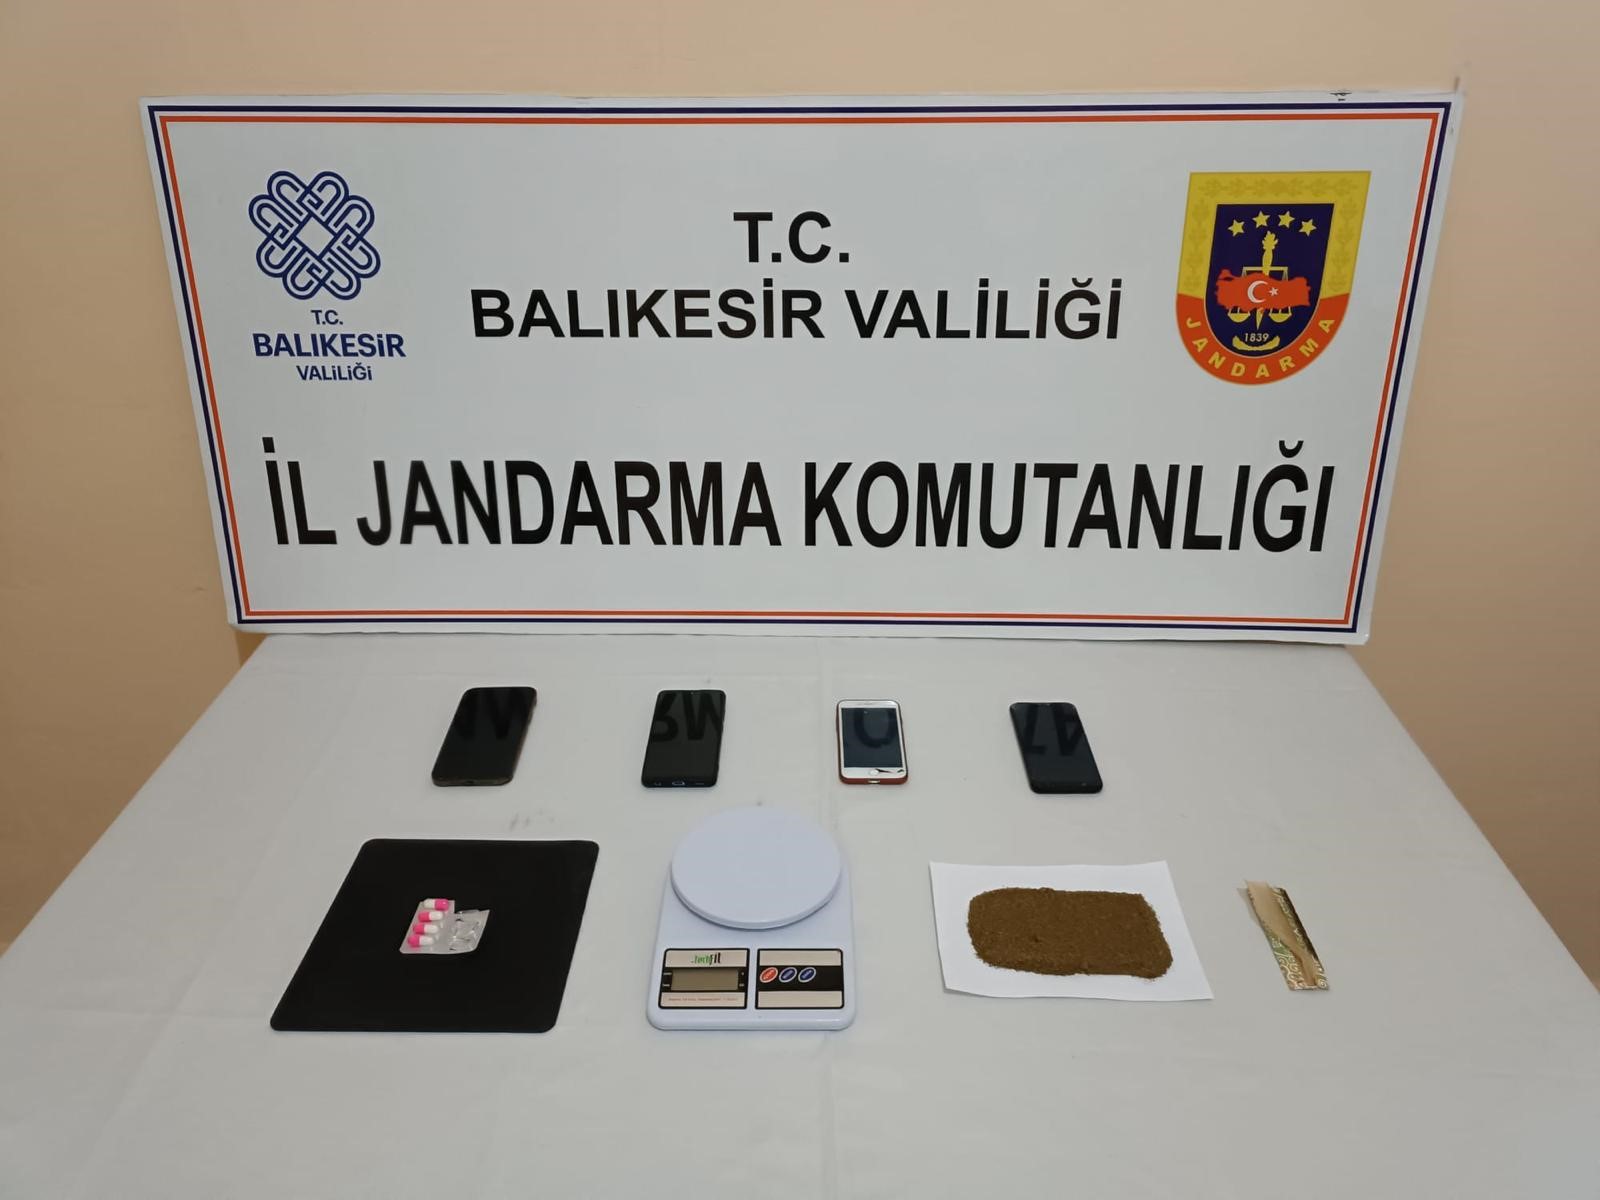 İzmir'den Balıkesir'e getirilen uyuşturucu jandarmaya takıldı